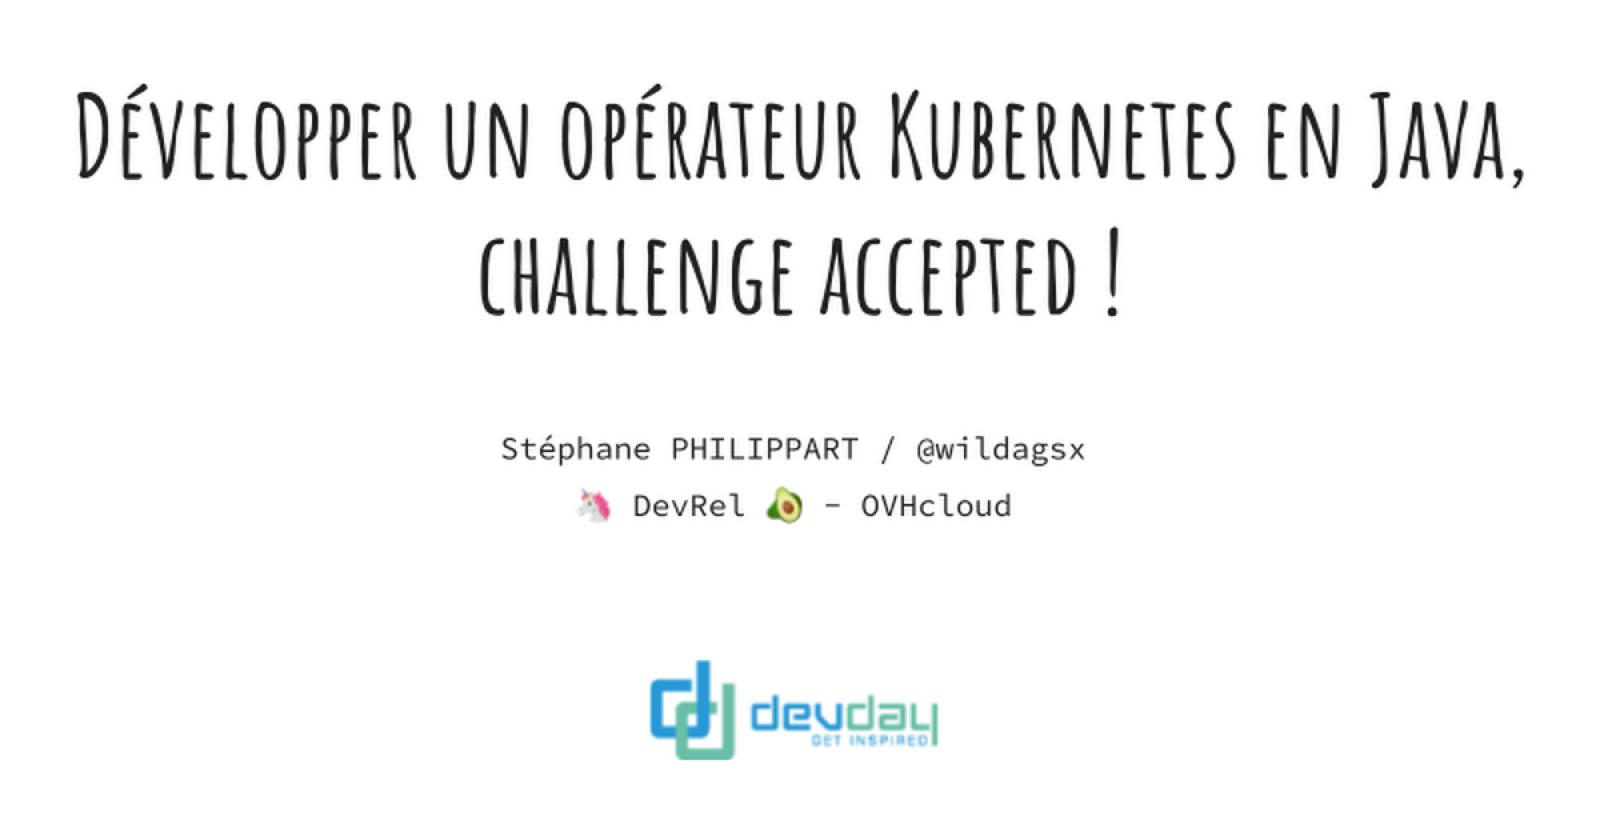 Développer un opérateur Kubernetes en Java, challenge accepted !